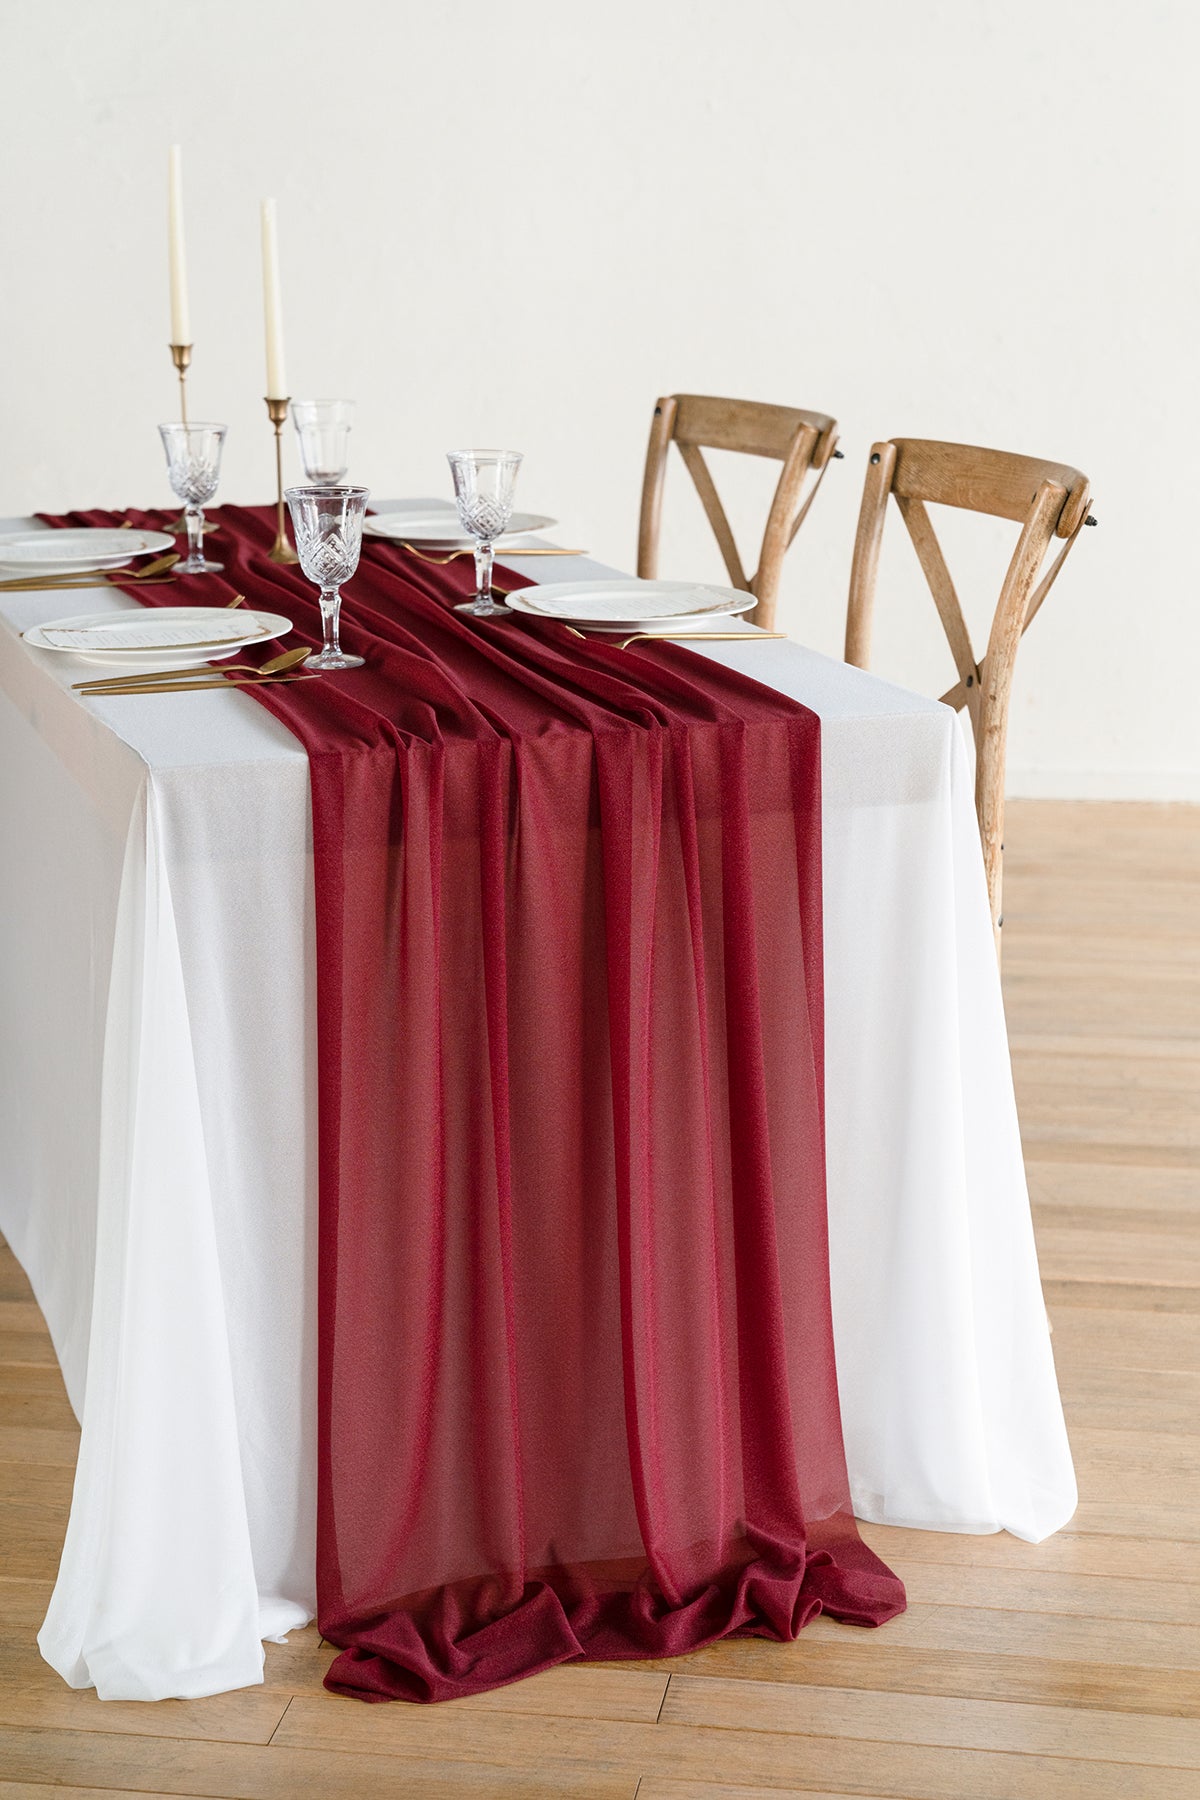 Table Linens in Dark Teal & Marsala